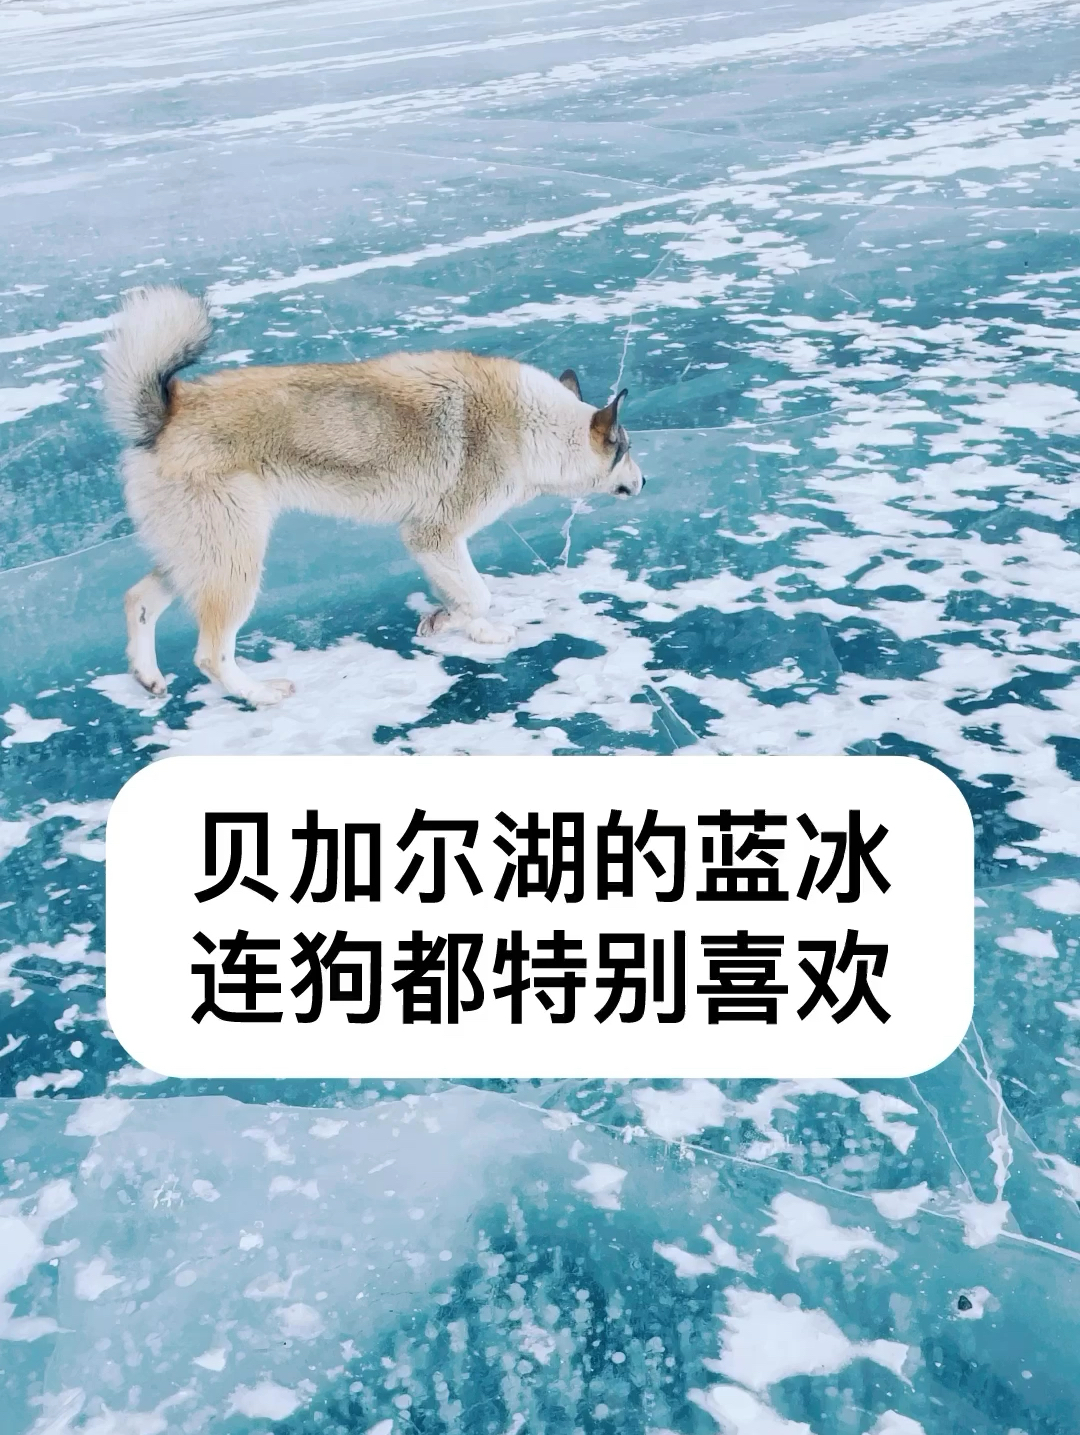 连狗都特别喜欢贝加尔湖的蓝冰